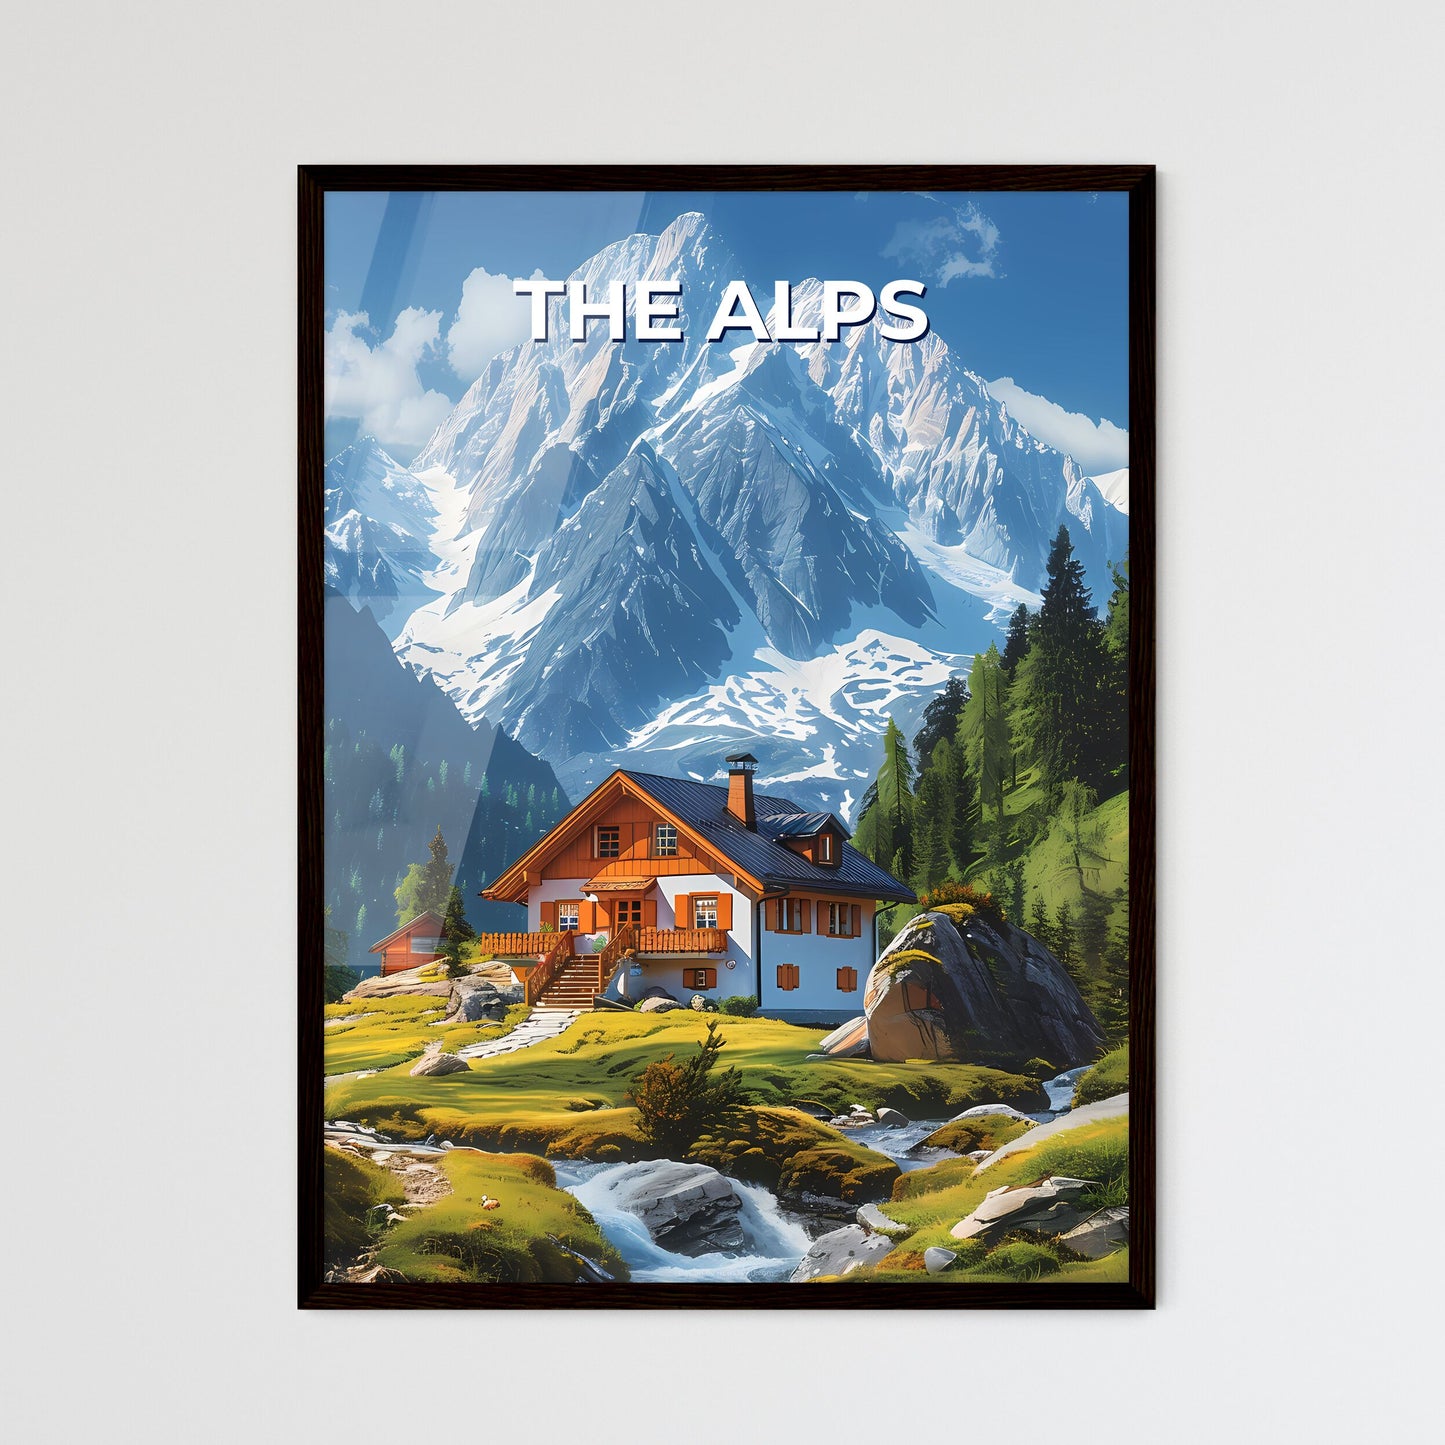 Artfully Captivating Alpine Landscape: A House Amidst Mountain Majesty